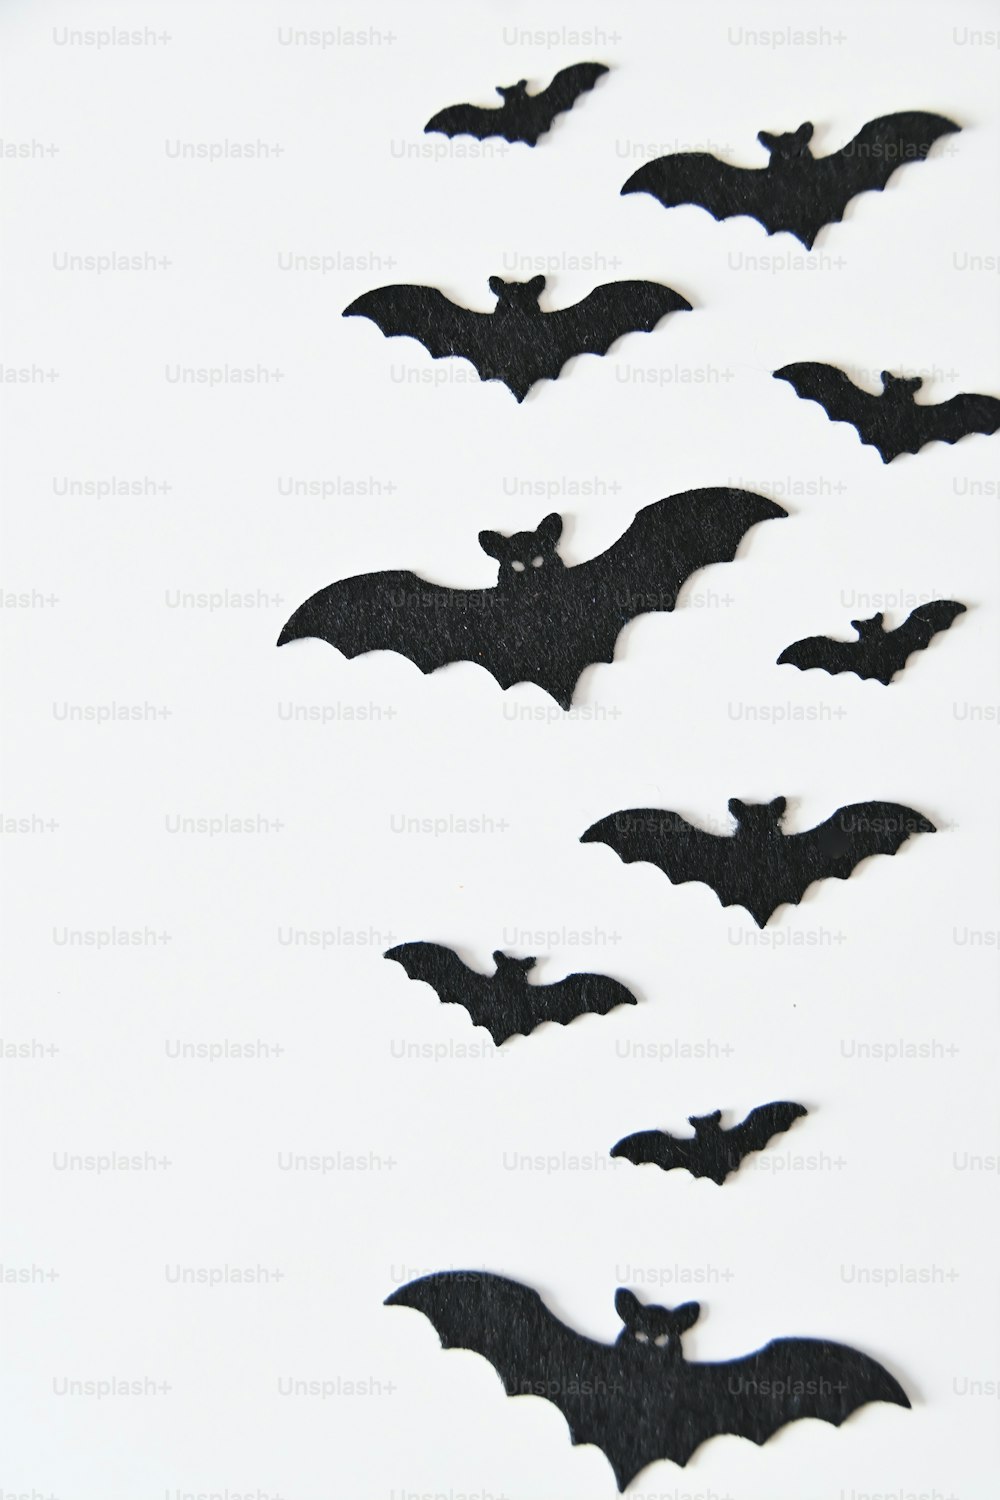 Un grupo de murciélagos volando en el aire